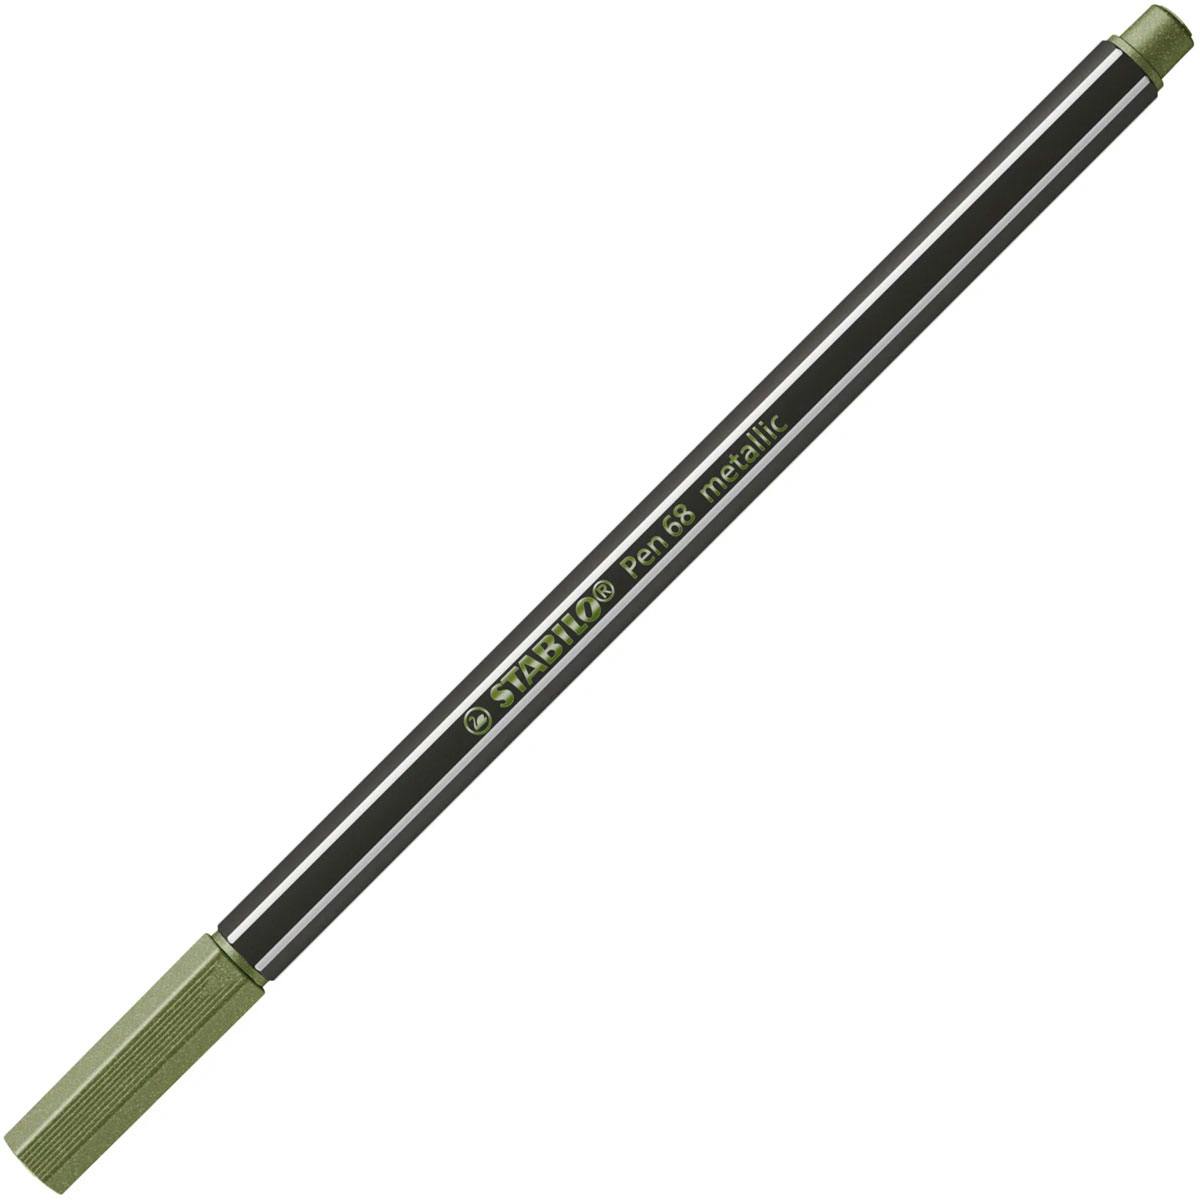 STABILO - Stabilo Pen 68 Μαρκαδόρος Σχεδίου 1.4 mm Μεταλλικό Πράσινο - Stabilo 68 Metallic Green 843 68/843